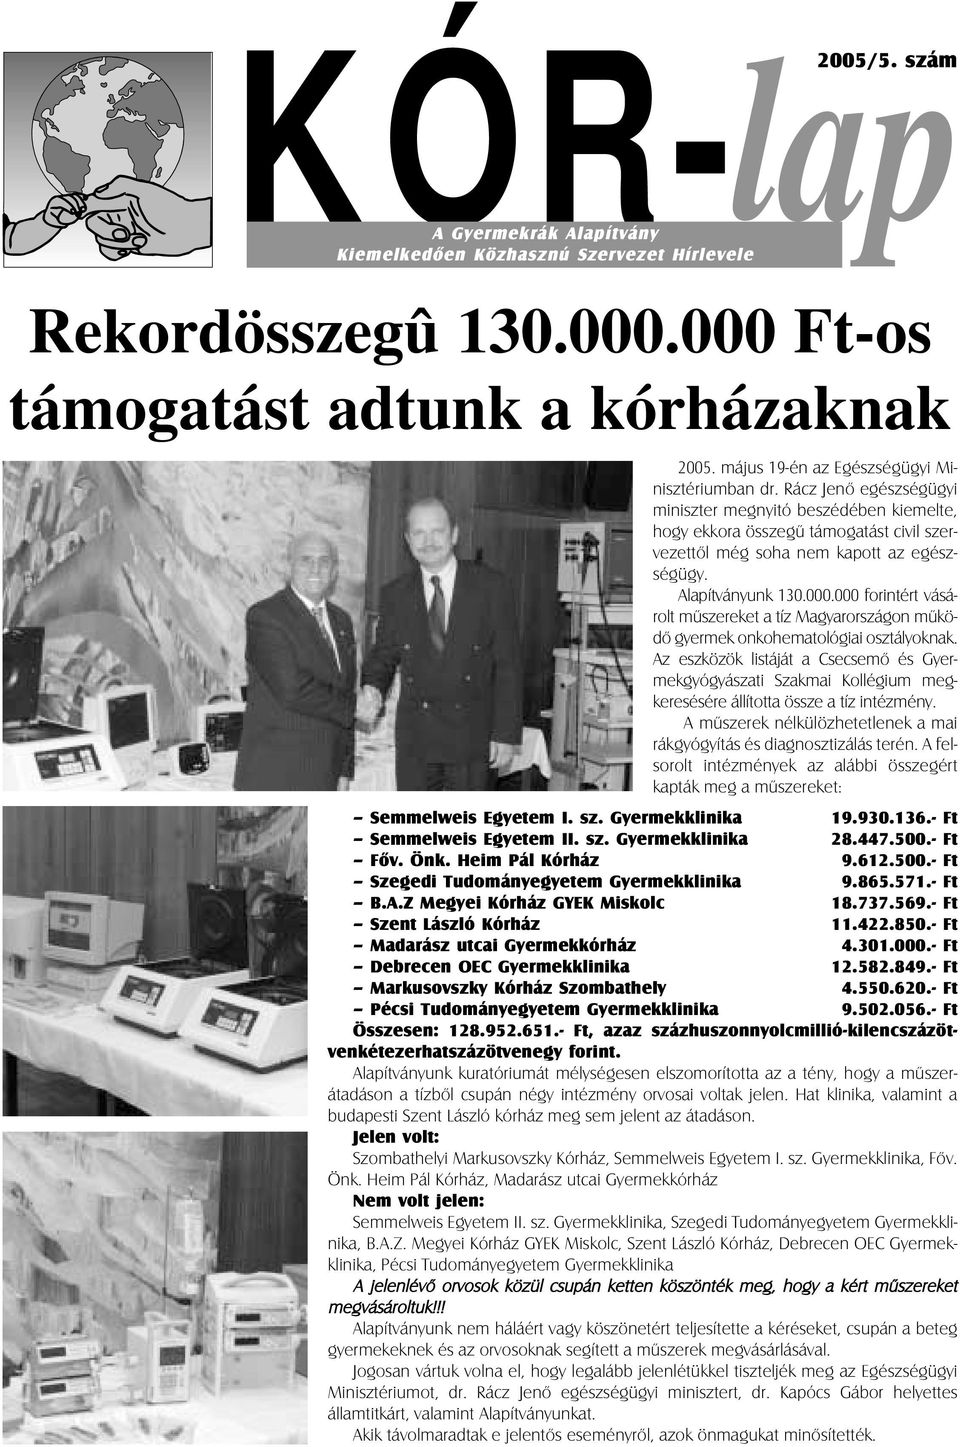 Alapítványunk 130.000.000 forintért vásárolt mûszereket a tíz Magyarországon mûködõ gyermek onkohematológiai osztályoknak.